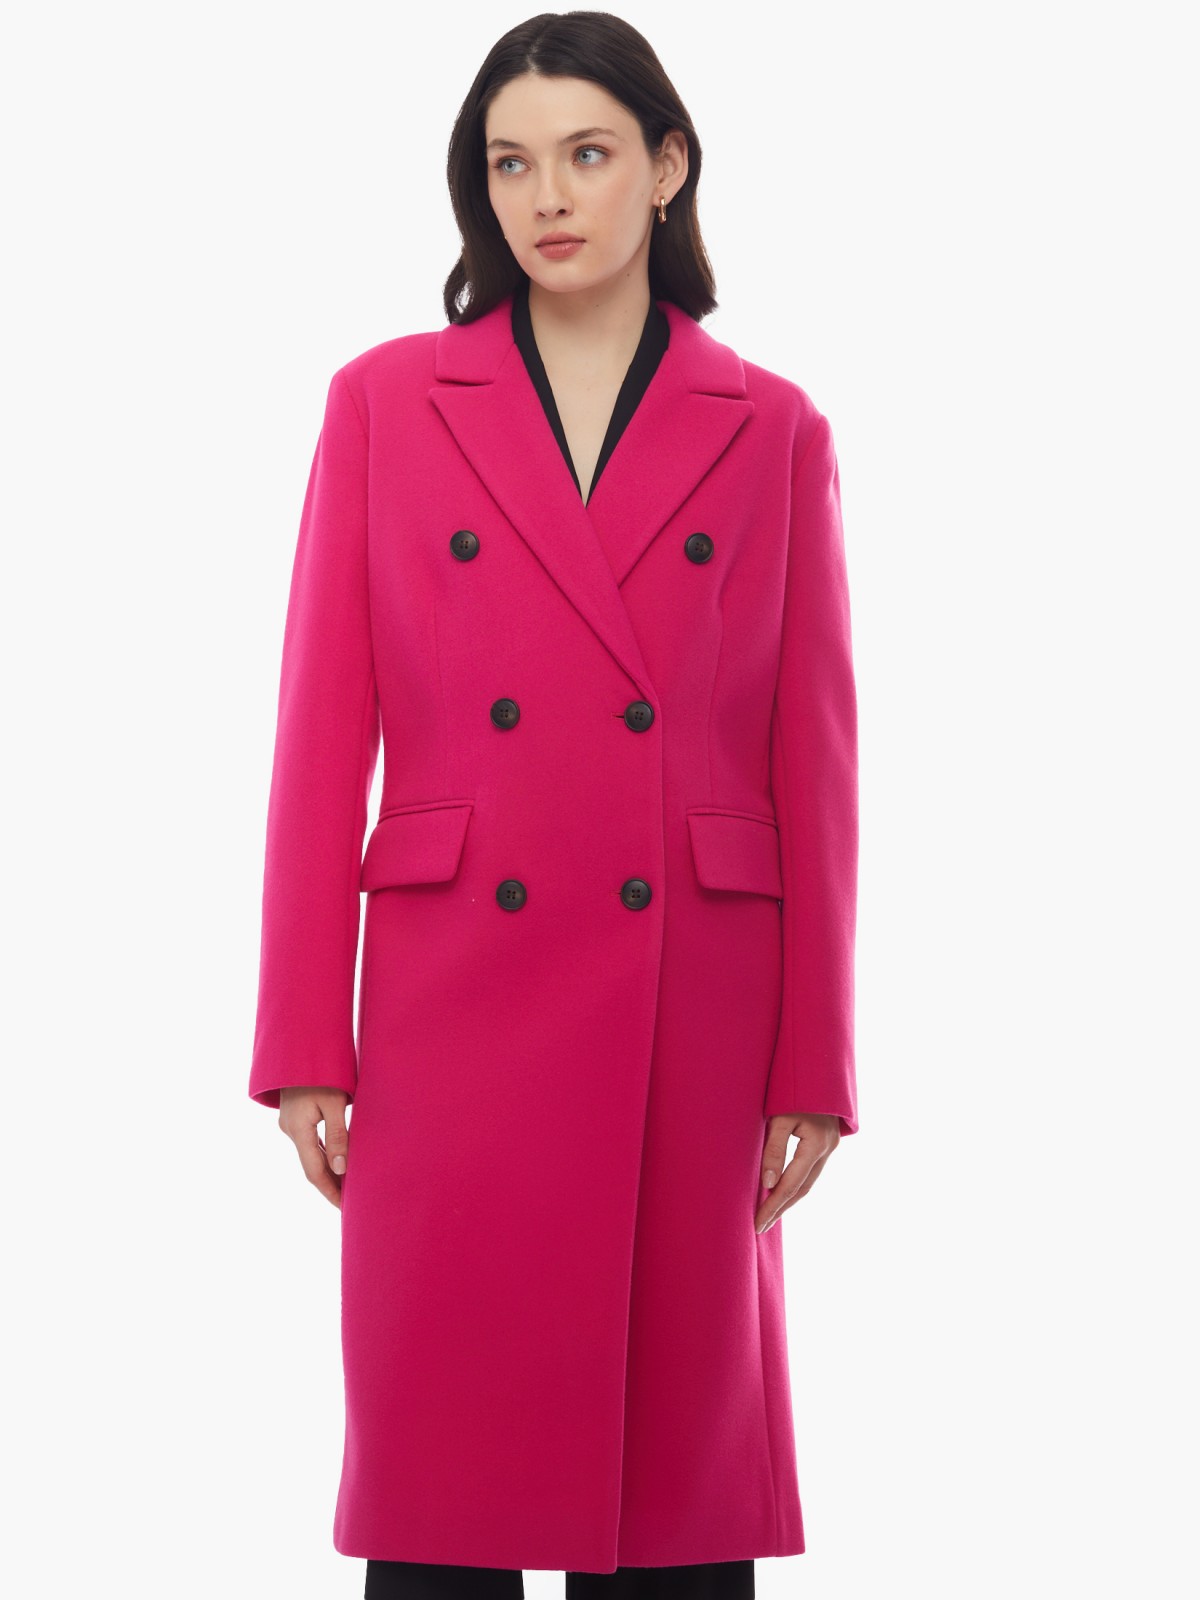 Тёплое пальто полуприлегающего фасона с отложным воротником zolla 024125857164, цвет фуксия, размер XS - фото 5